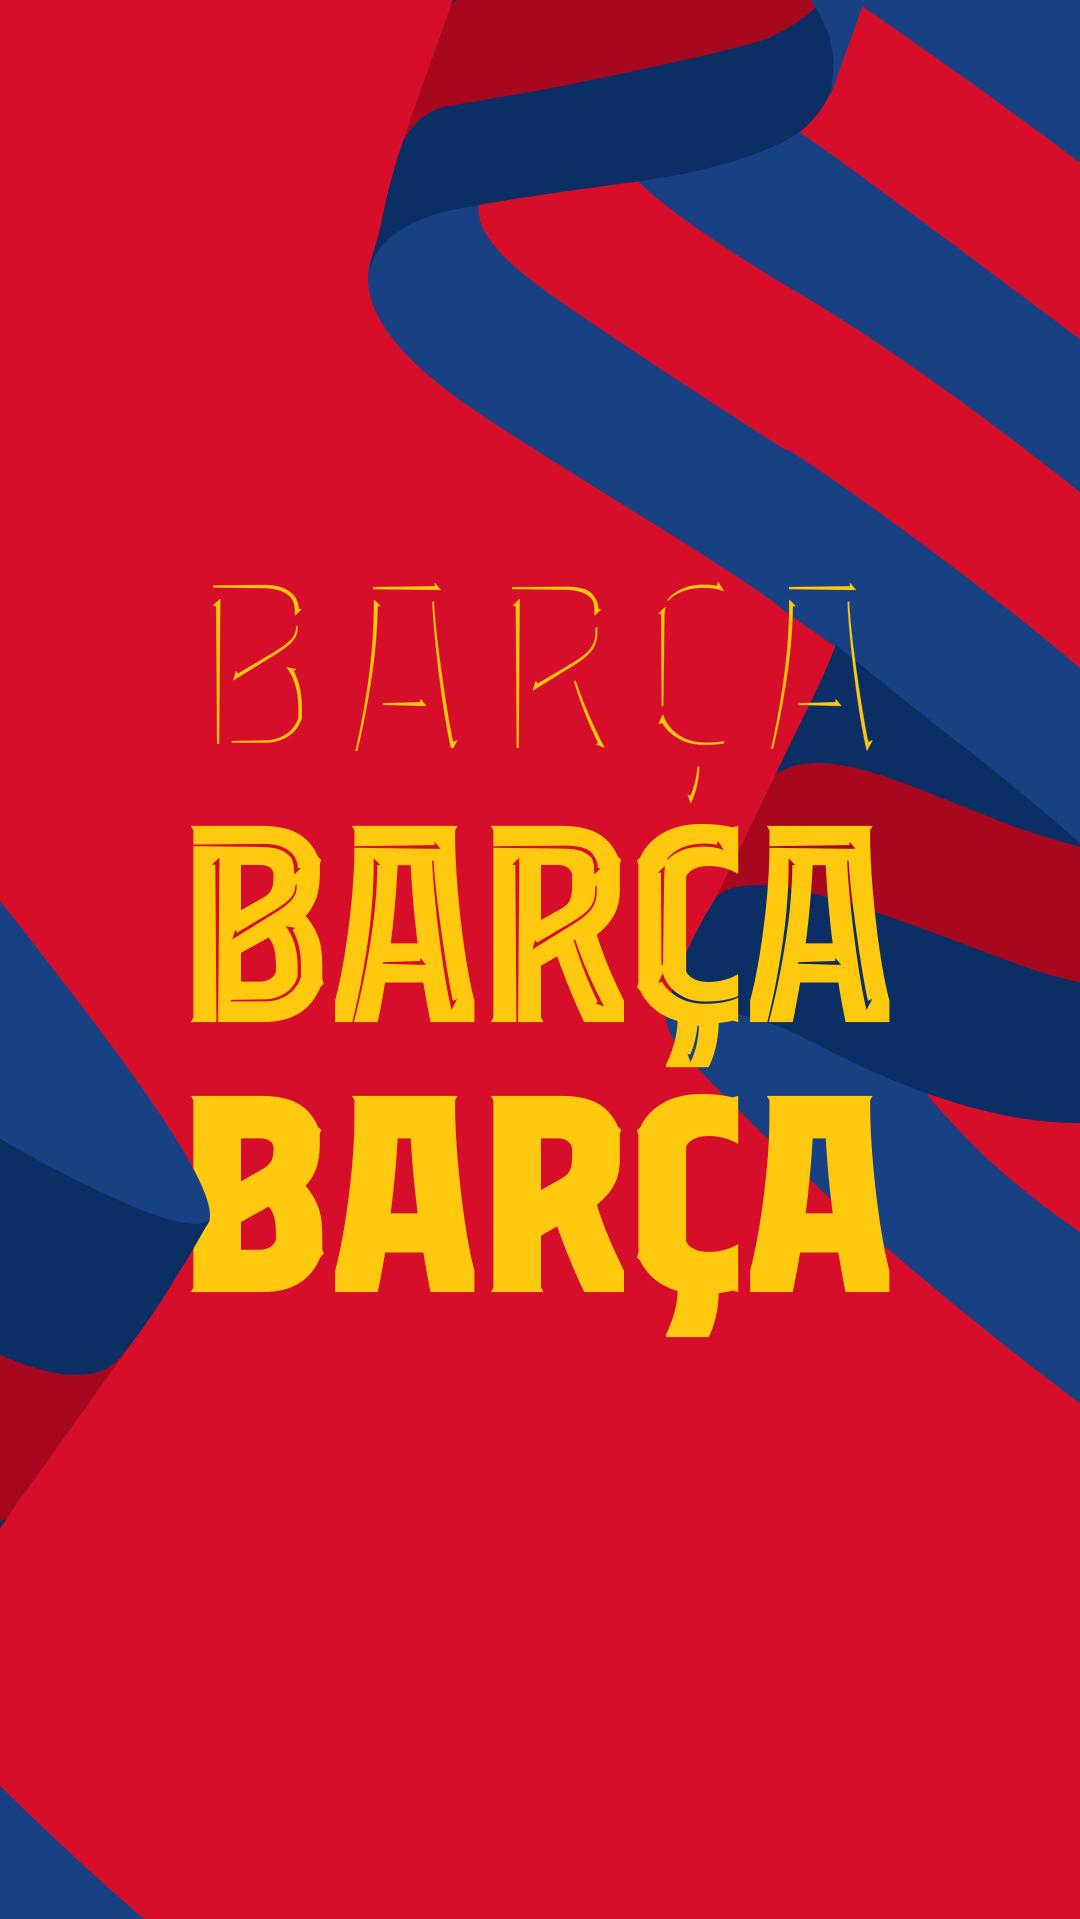 FC BARCELONA WALLPAPER 2021 4K by SelvedinFCB on